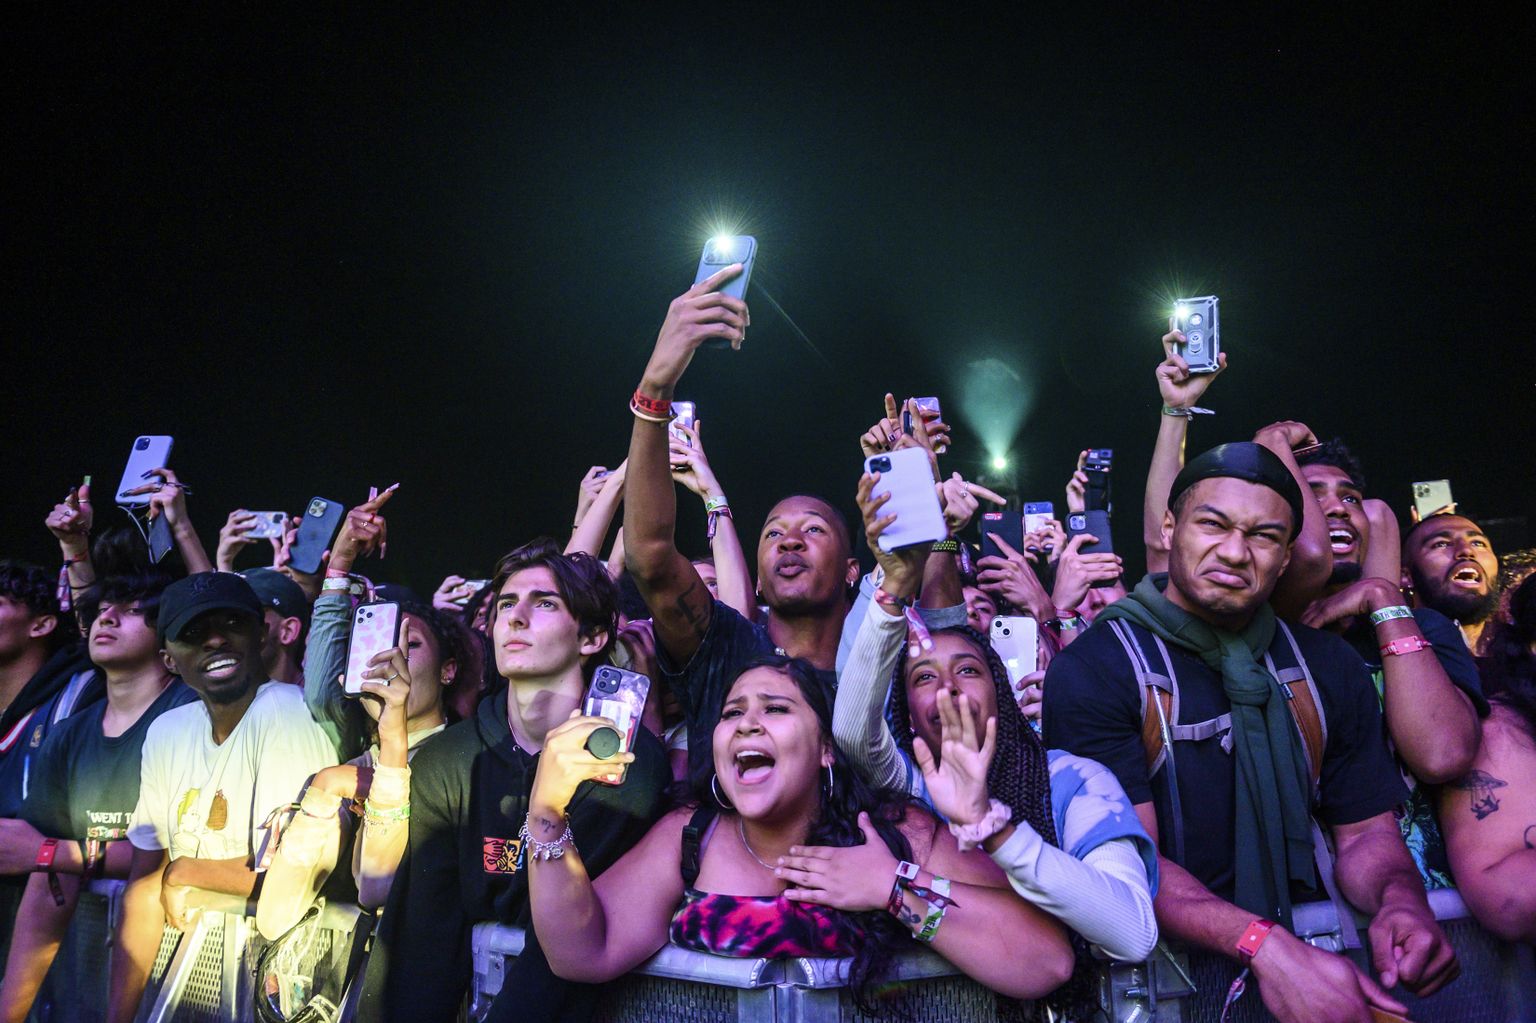 Noored kuulamas Astroworld festivali kontserdil Travis Scotti. Kontserdil kaotas elu kaheksa inimest, kui rahvamass, kus oli 50 000 inimest, hakkas lava poole liikuma